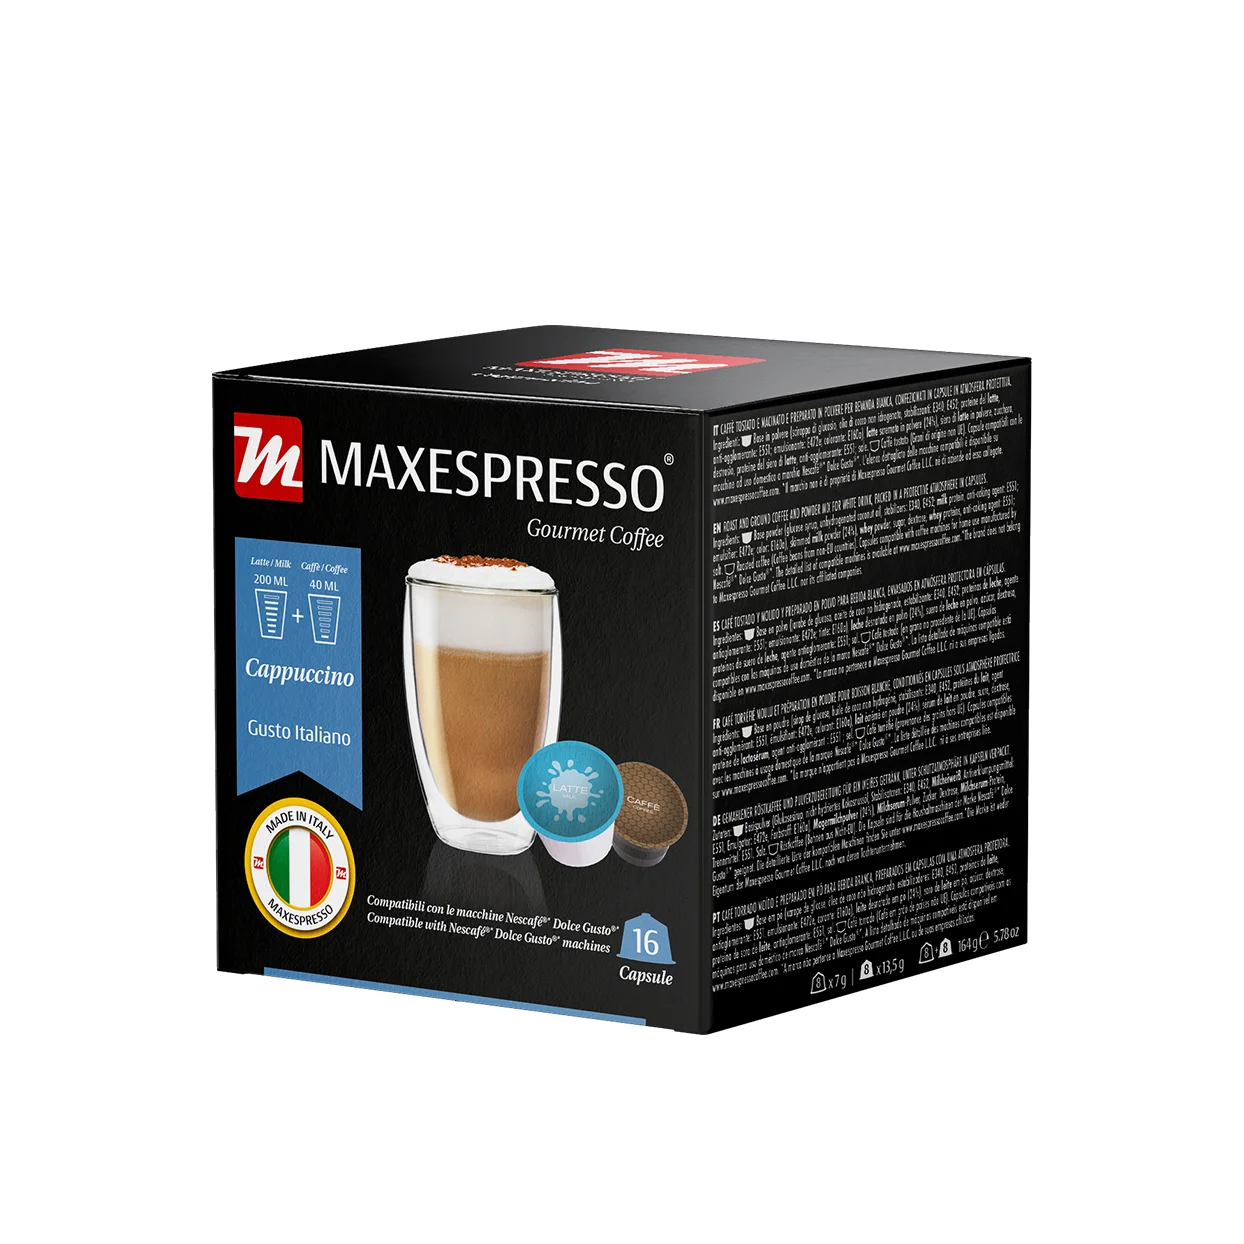 Gusto Italiano Maxespresso - Cappuccino